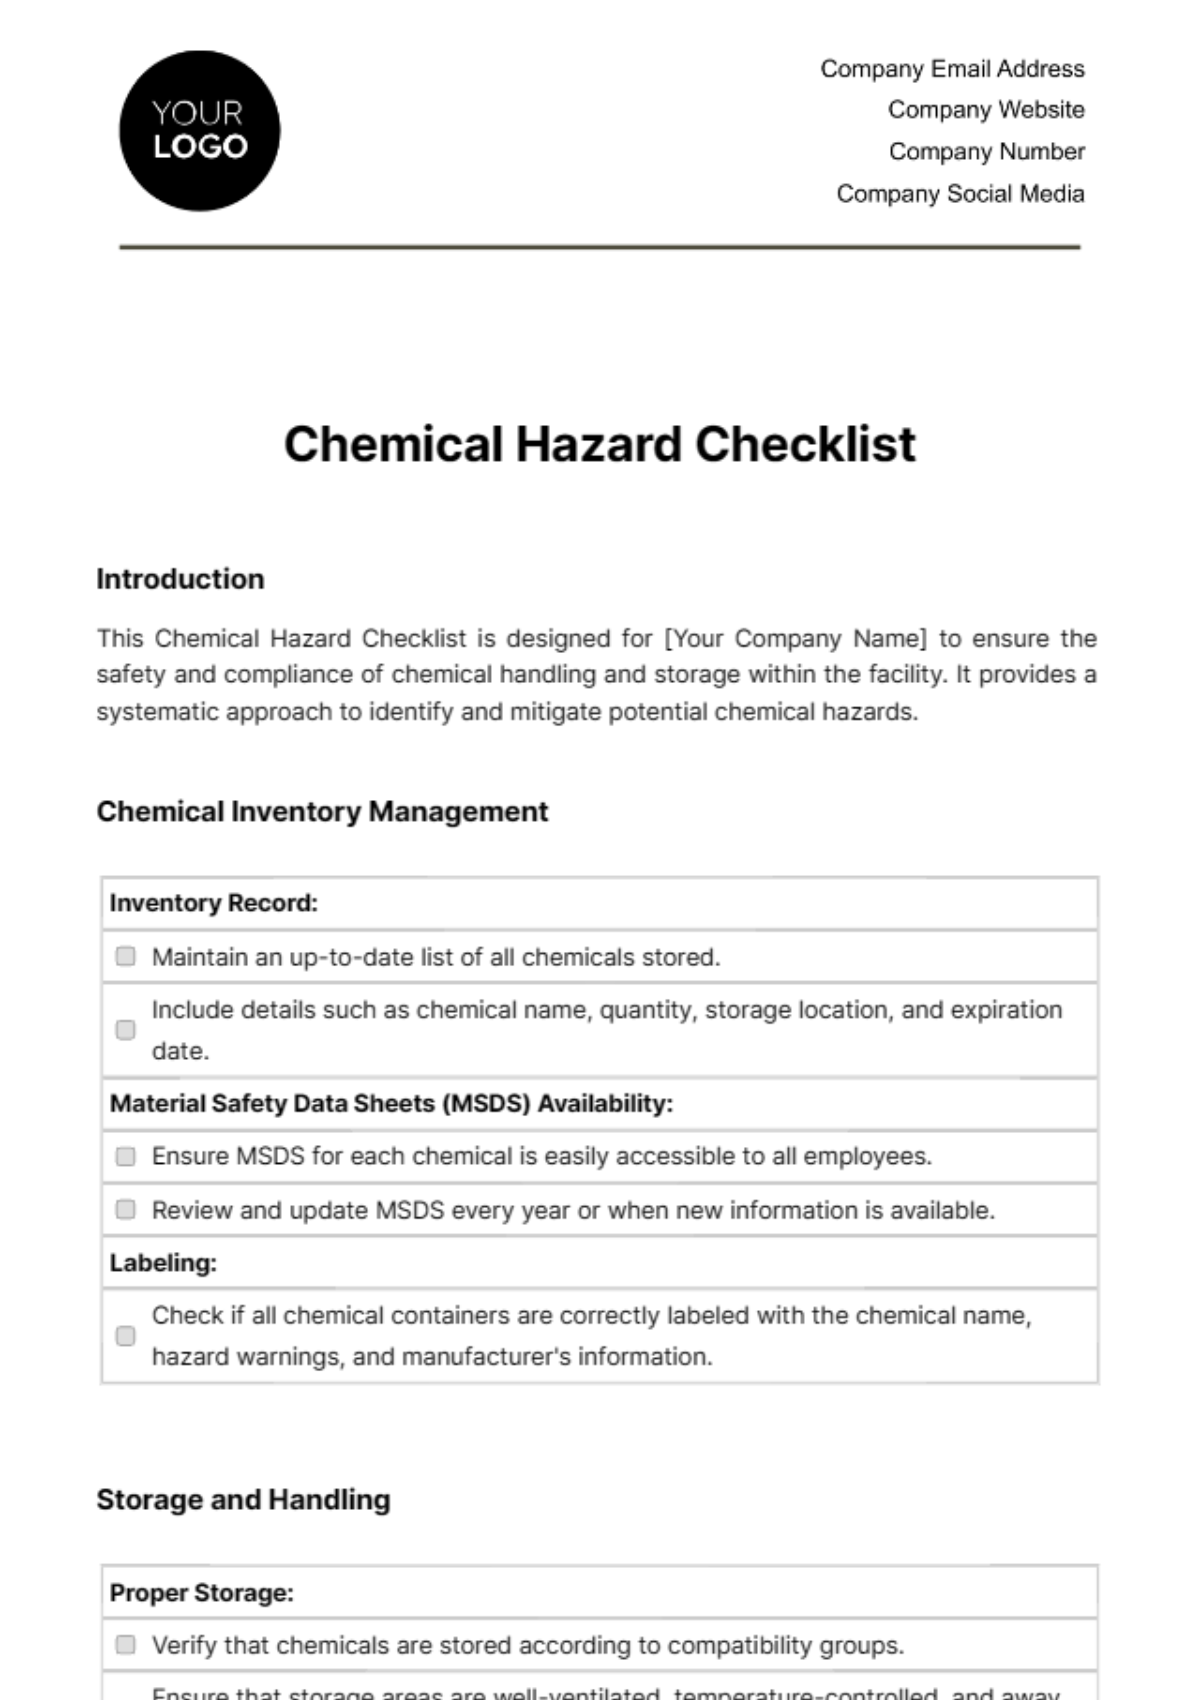 Chemical Hazard Checklist Template